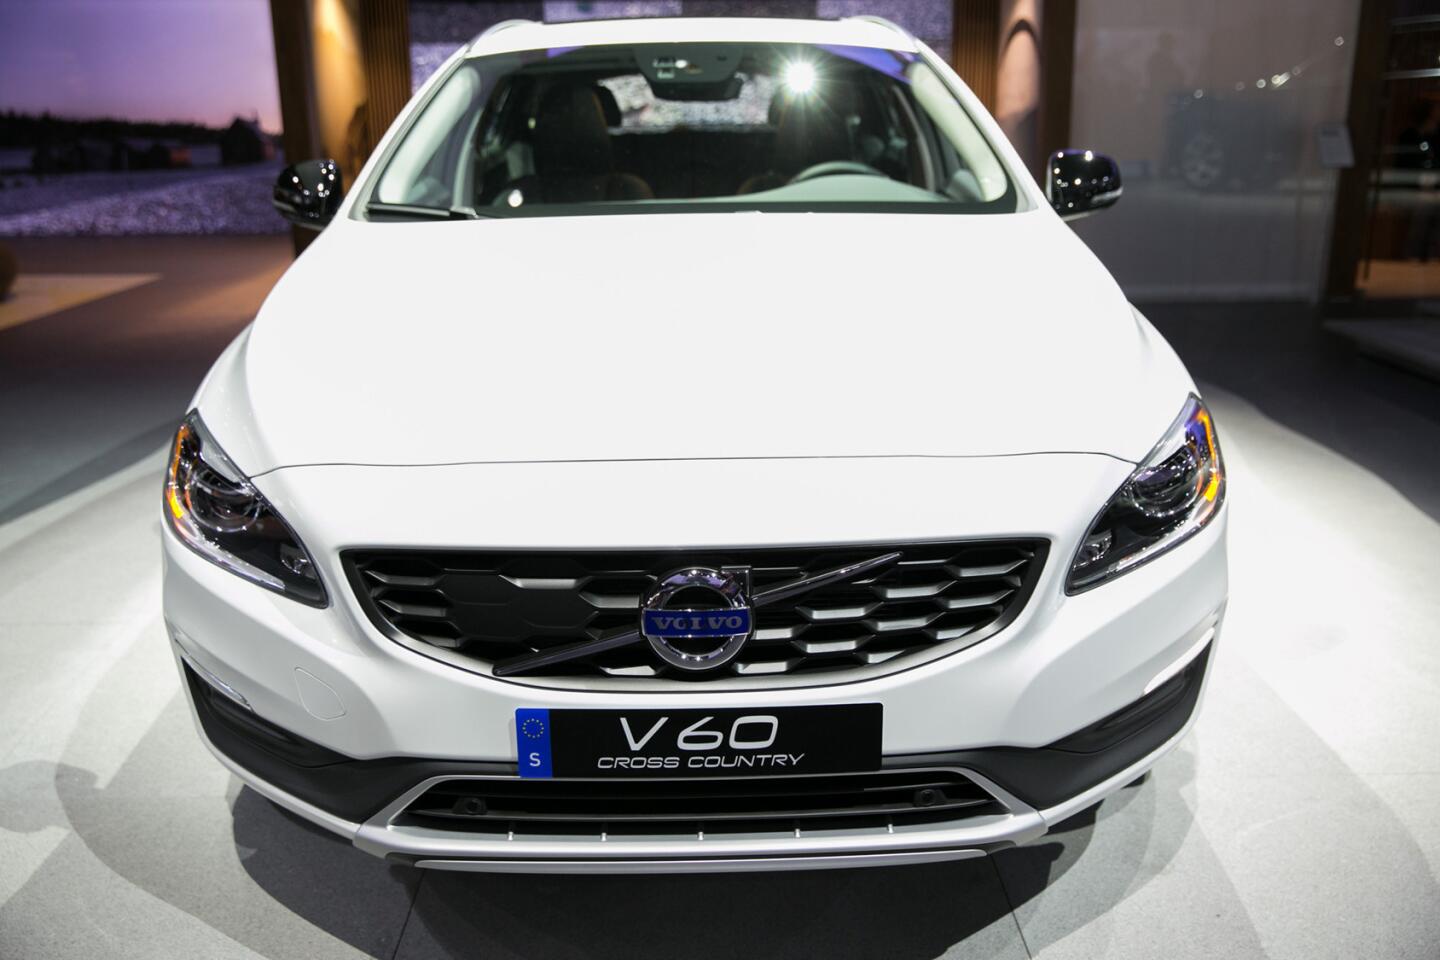 TDI Tuning - Case Study: Volvo V60 (Ian Coughlin)